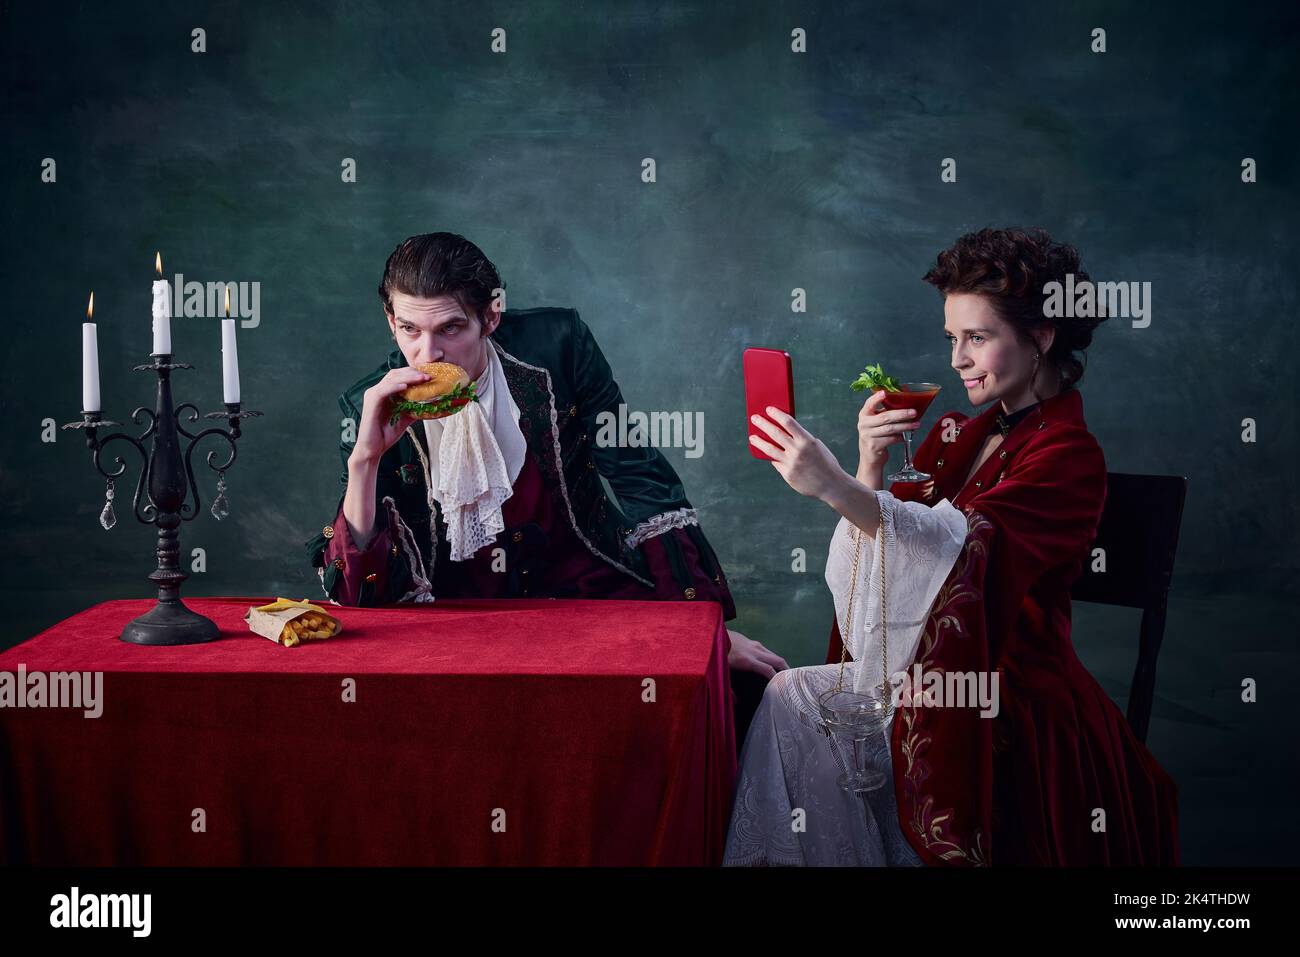 Ritratto di uomo e donna a immagine di vampiri medievali su sfondo verde scuro. Uomo che mangia hamburger, donna che beve e che prende selfie Foto Stock